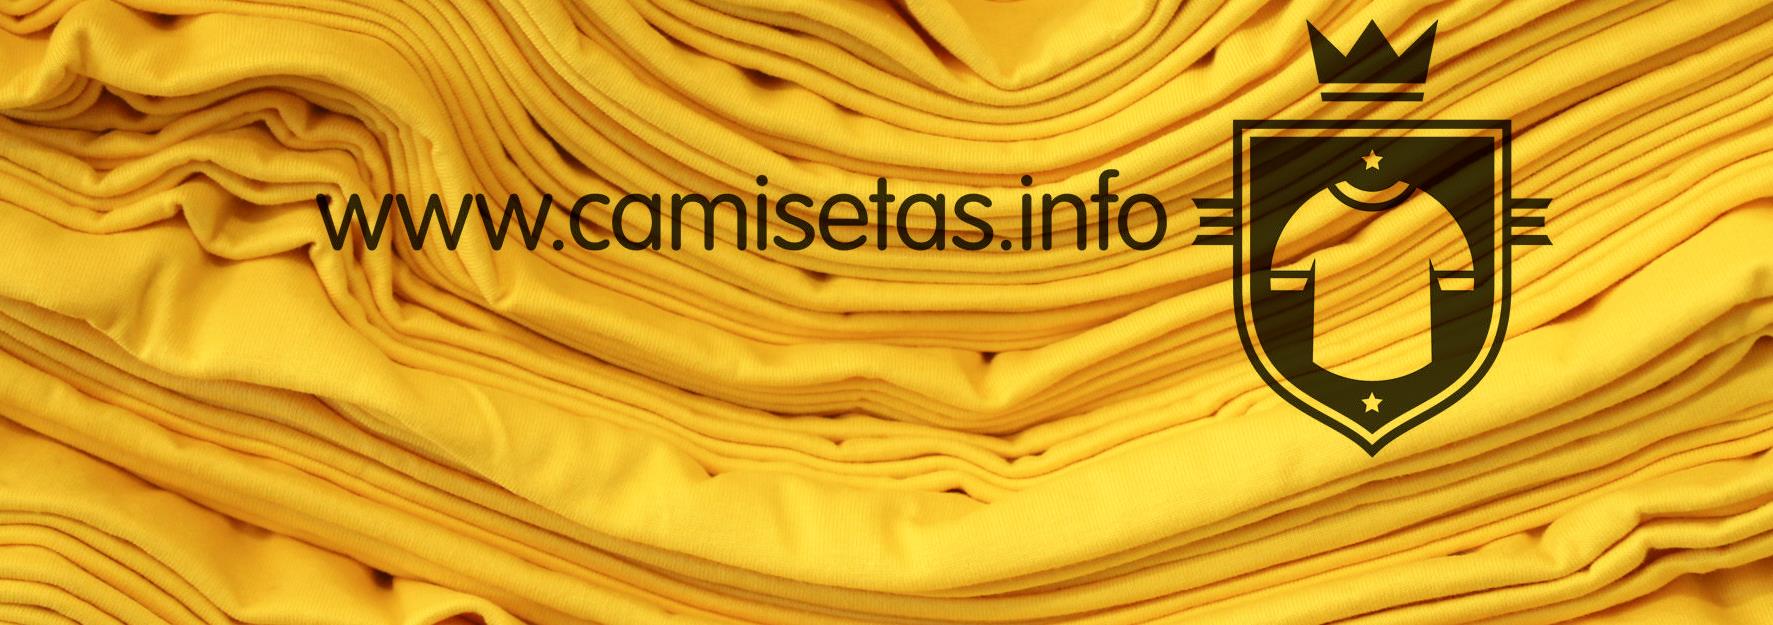 Camisetas.info, una empresa catalana que personaliza nuestras prendas de ropa